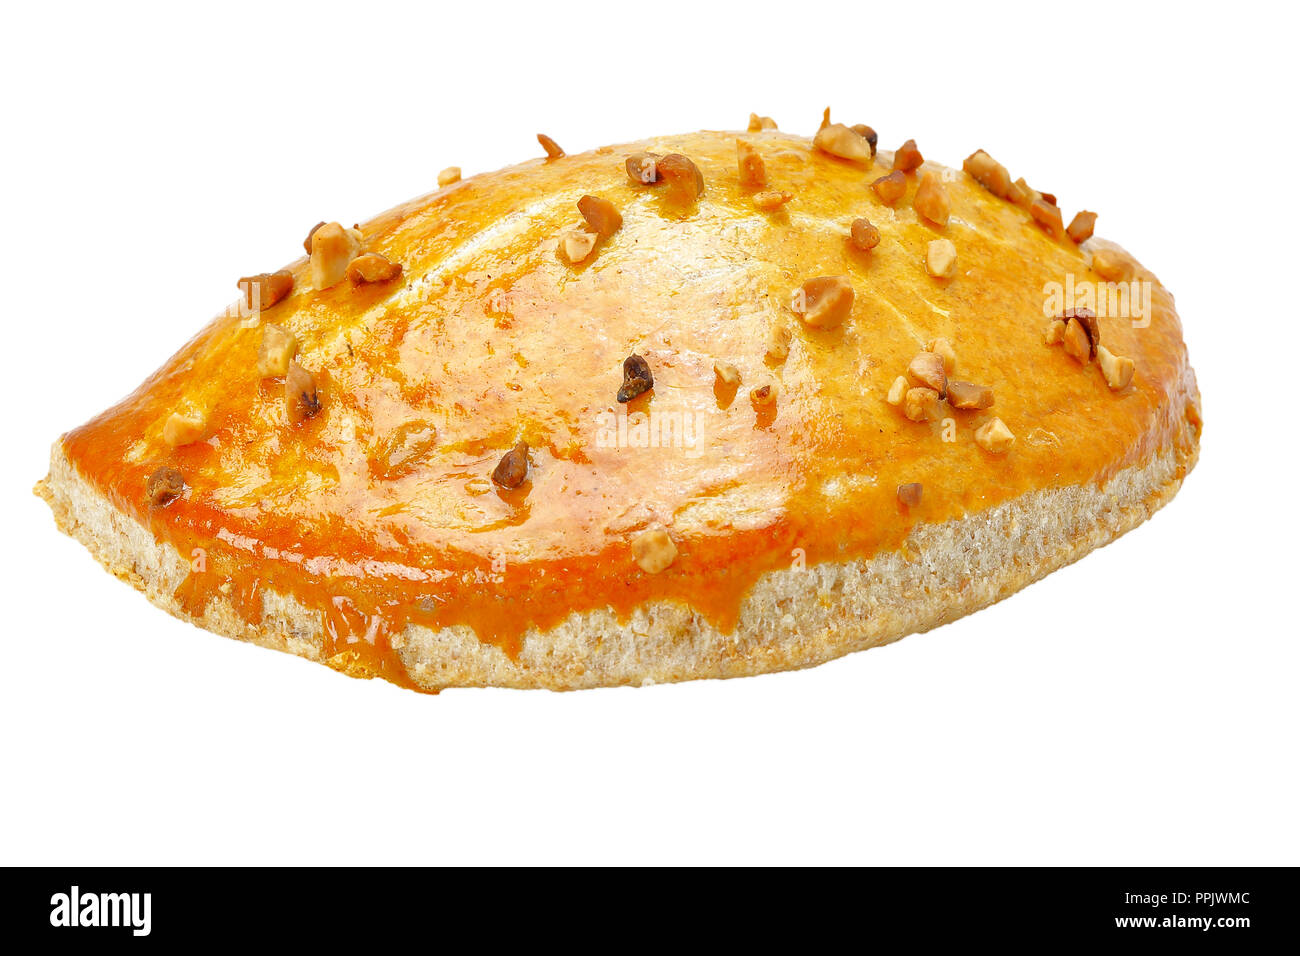 Brazilian snacks, roasted pastel on white background Stock Photo